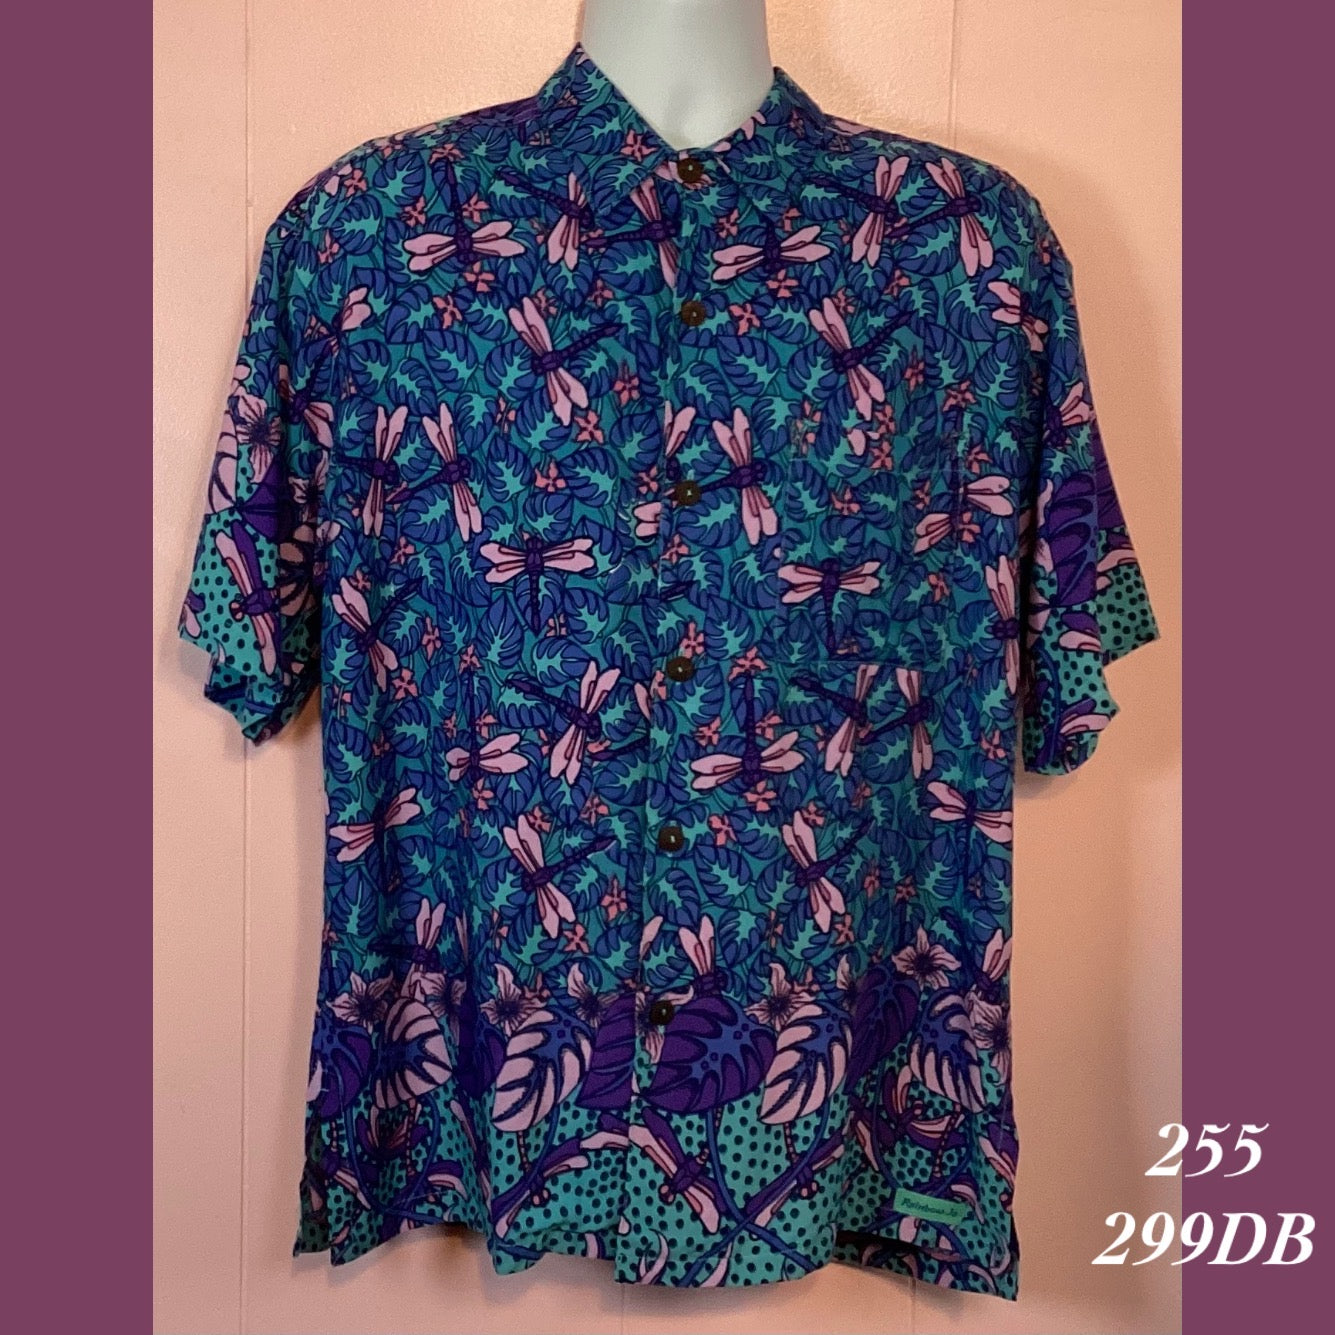 255 - 299DB , Men's Aloha shirt